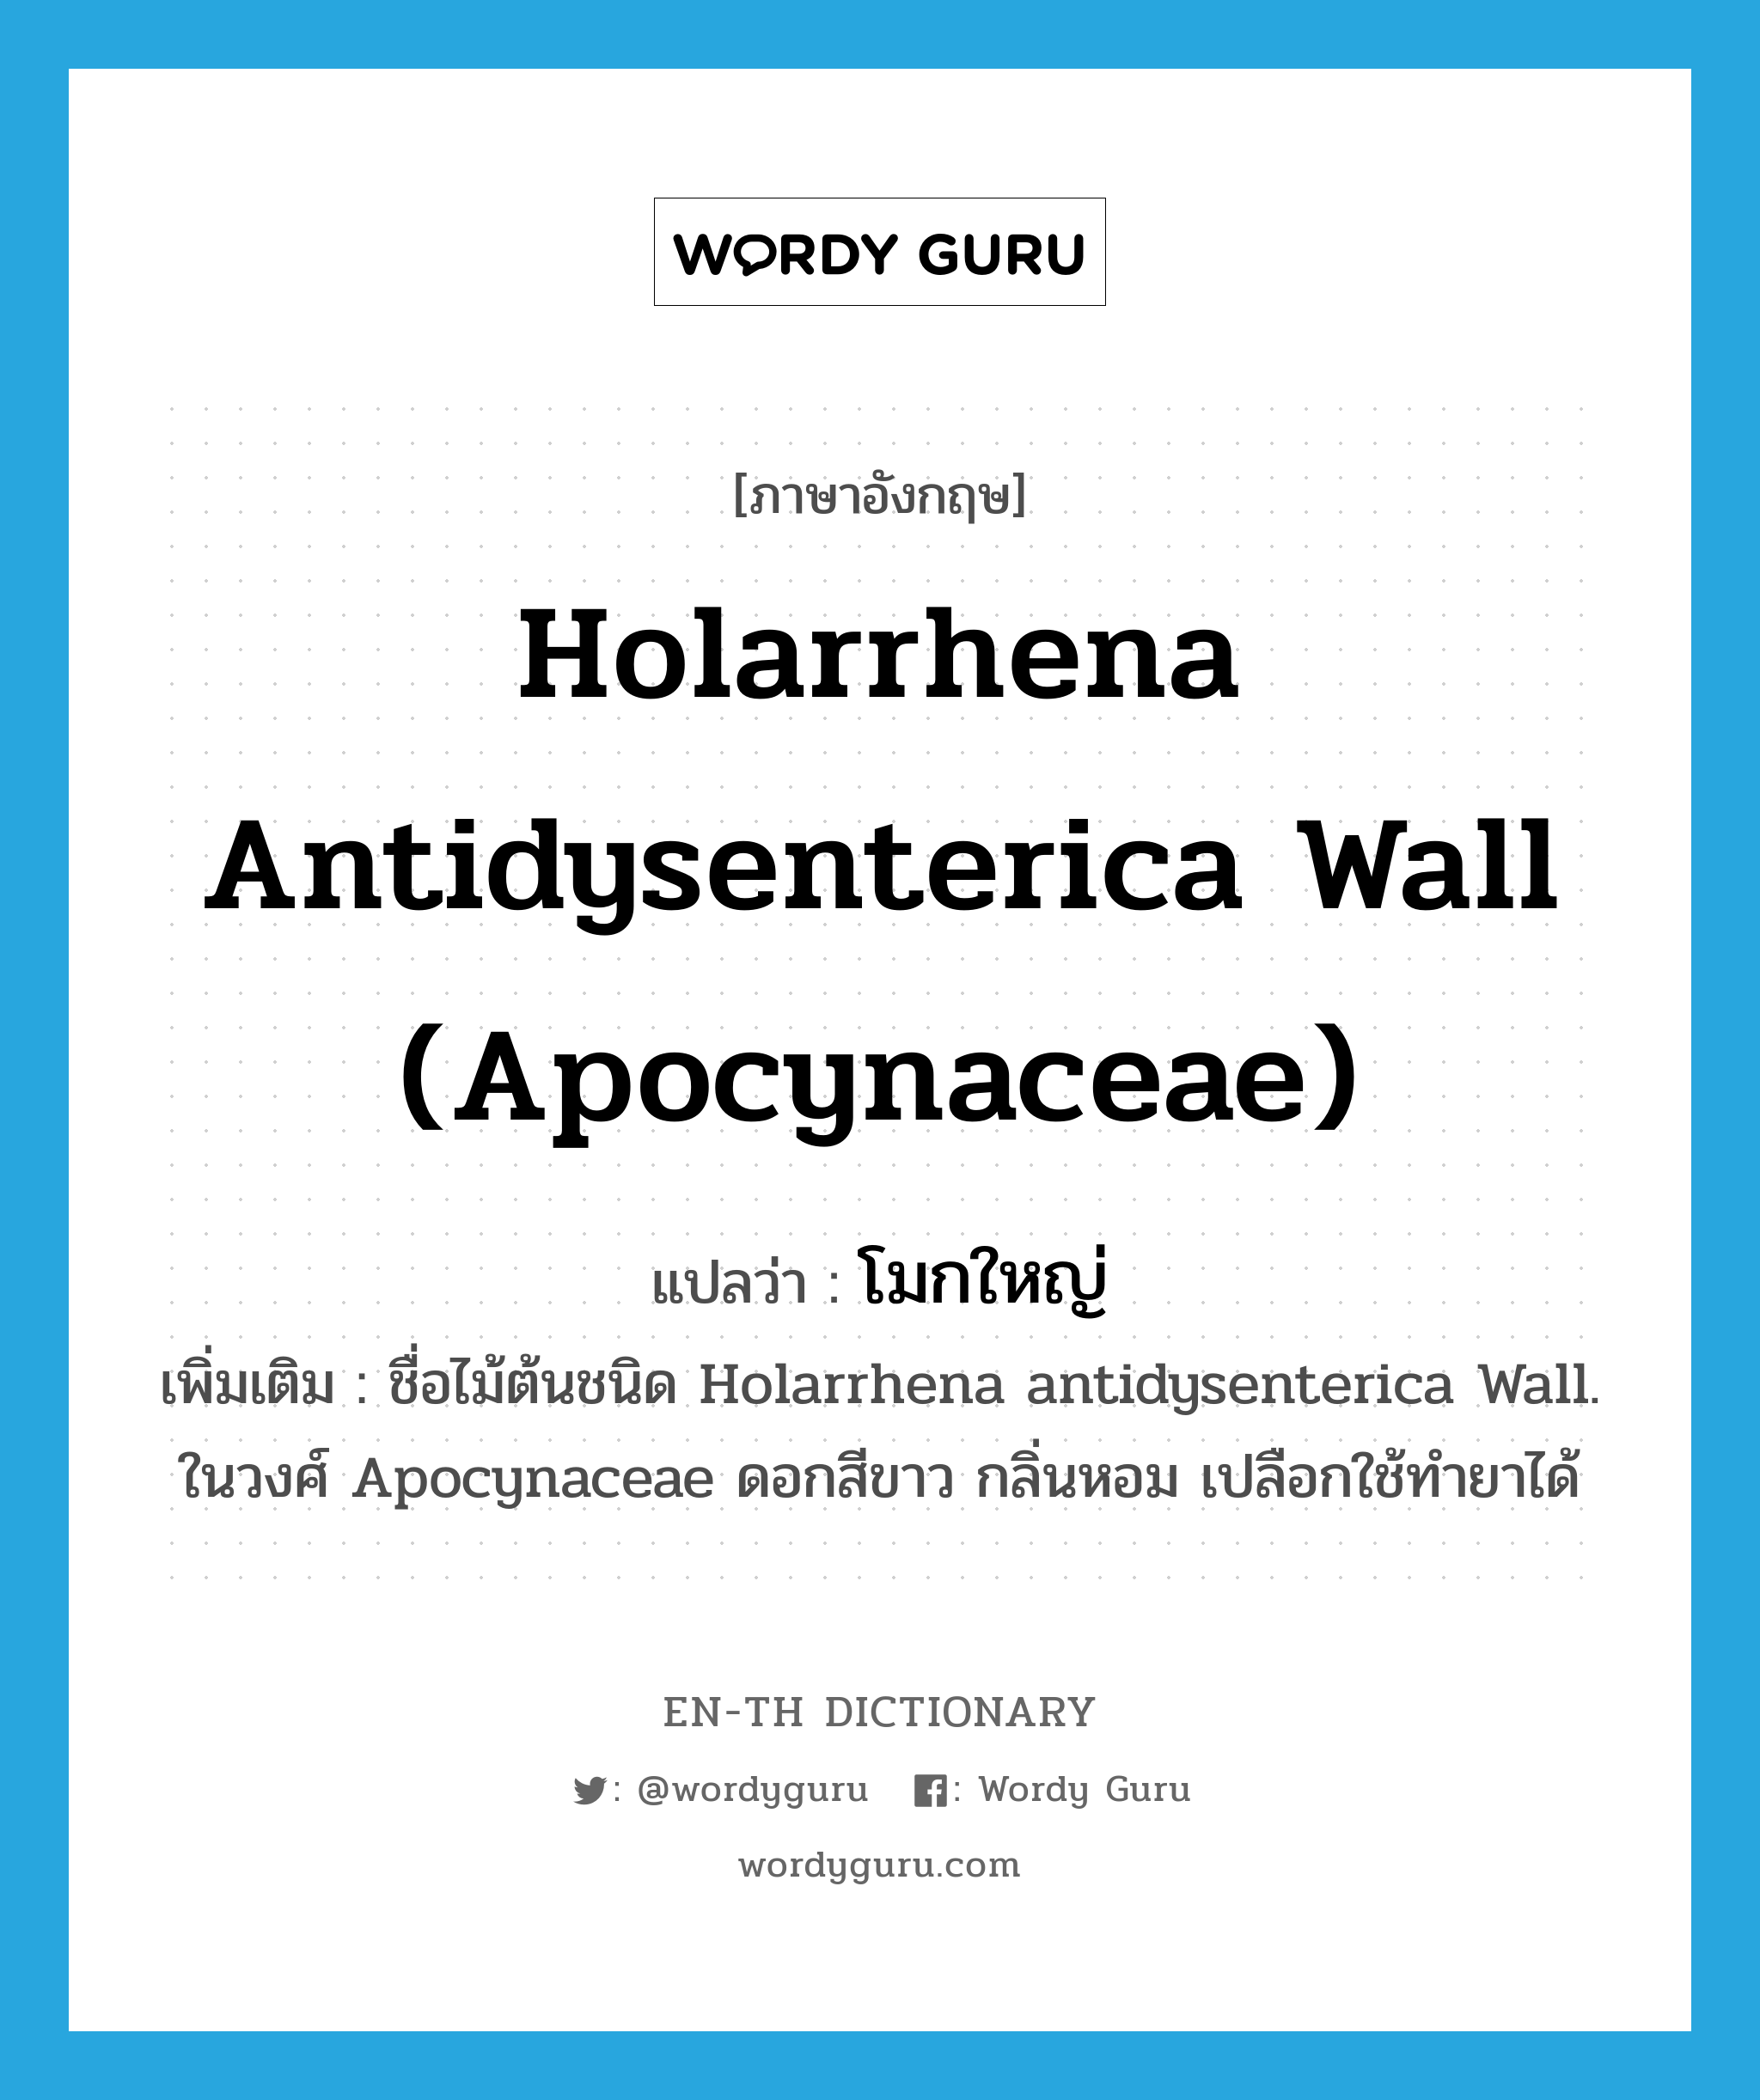 โมกใหญ่ ภาษาอังกฤษ?, คำศัพท์ภาษาอังกฤษ โมกใหญ่ แปลว่า Holarrhena antidysenterica Wall (Apocynaceae) ประเภท N เพิ่มเติม ชื่อไม้ต้นชนิด Holarrhena antidysenterica Wall. ในวงศ์ Apocynaceae ดอกสีขาว กลิ่นหอม เปลือกใช้ทำยาได้ หมวด N